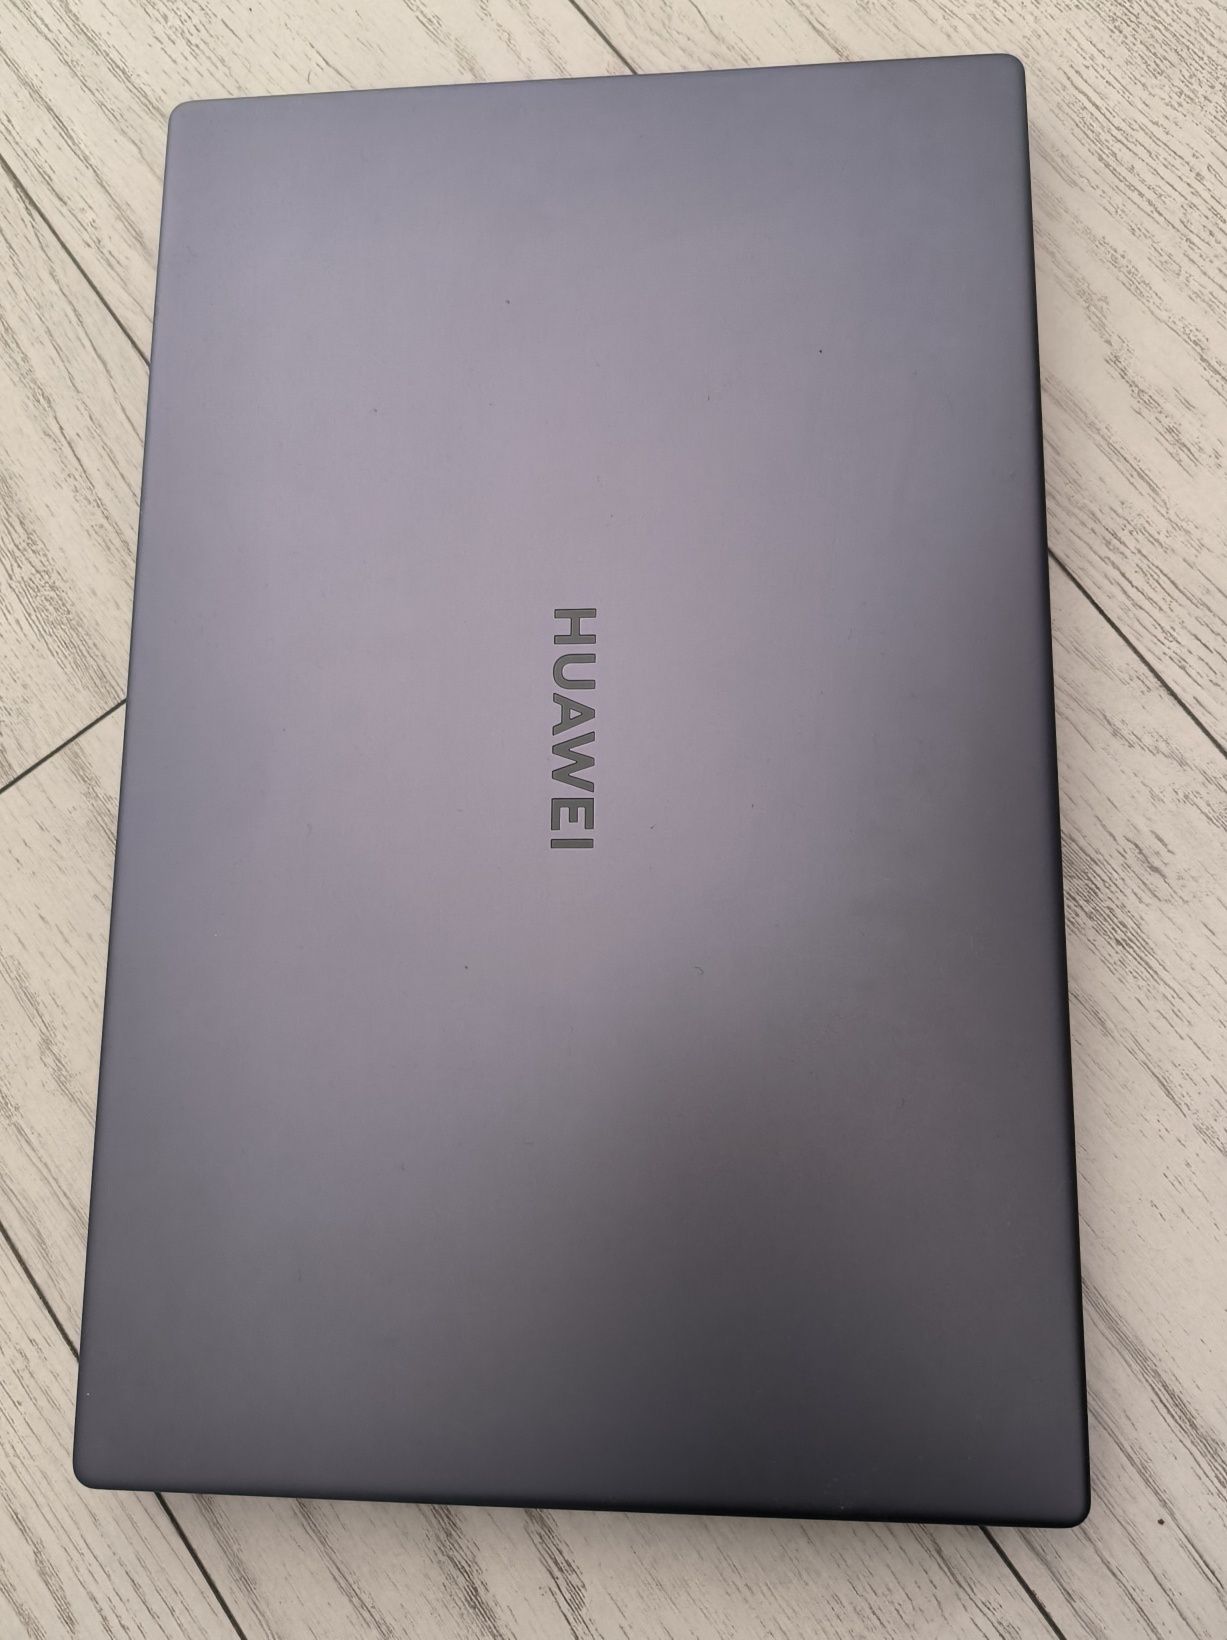 Laptop Huawei D15